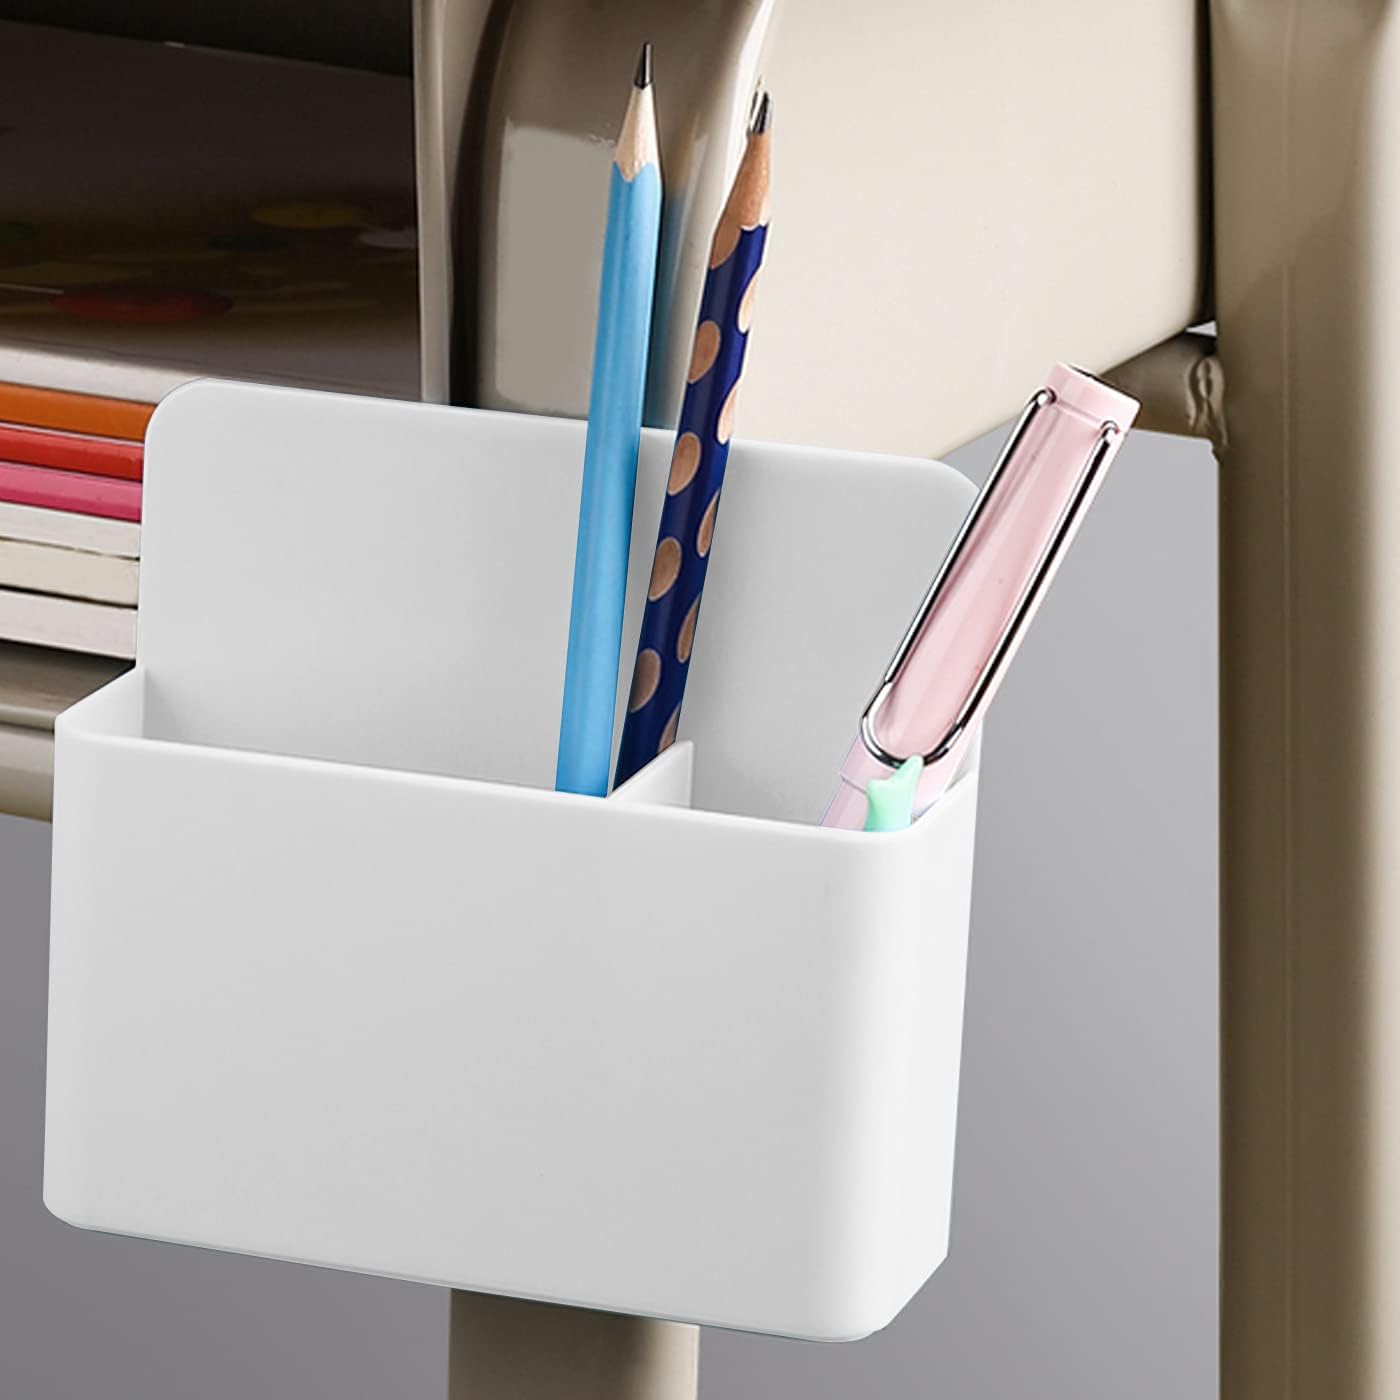 Magnetic Dry Erase Marker Pen Holder for Fridge Whiteboard,1 Pack